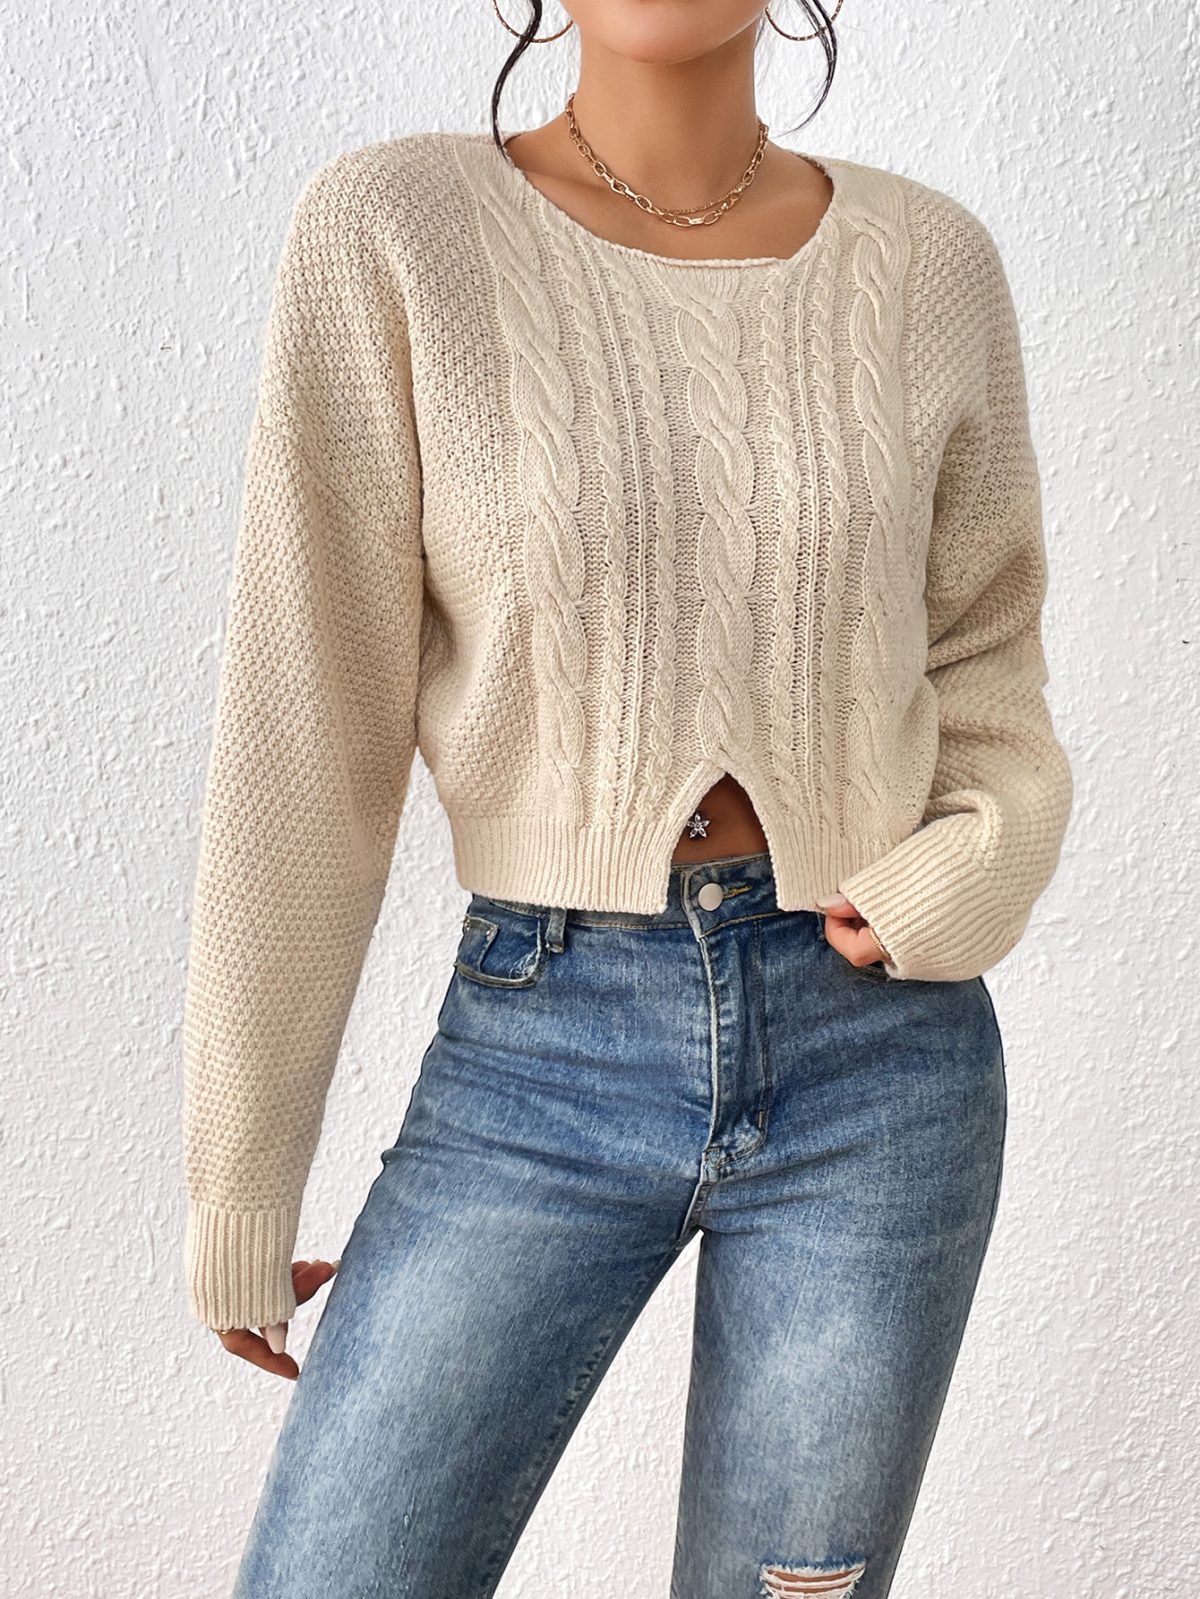 Hemp Pattern Split Pullover Sweater in Sweaters